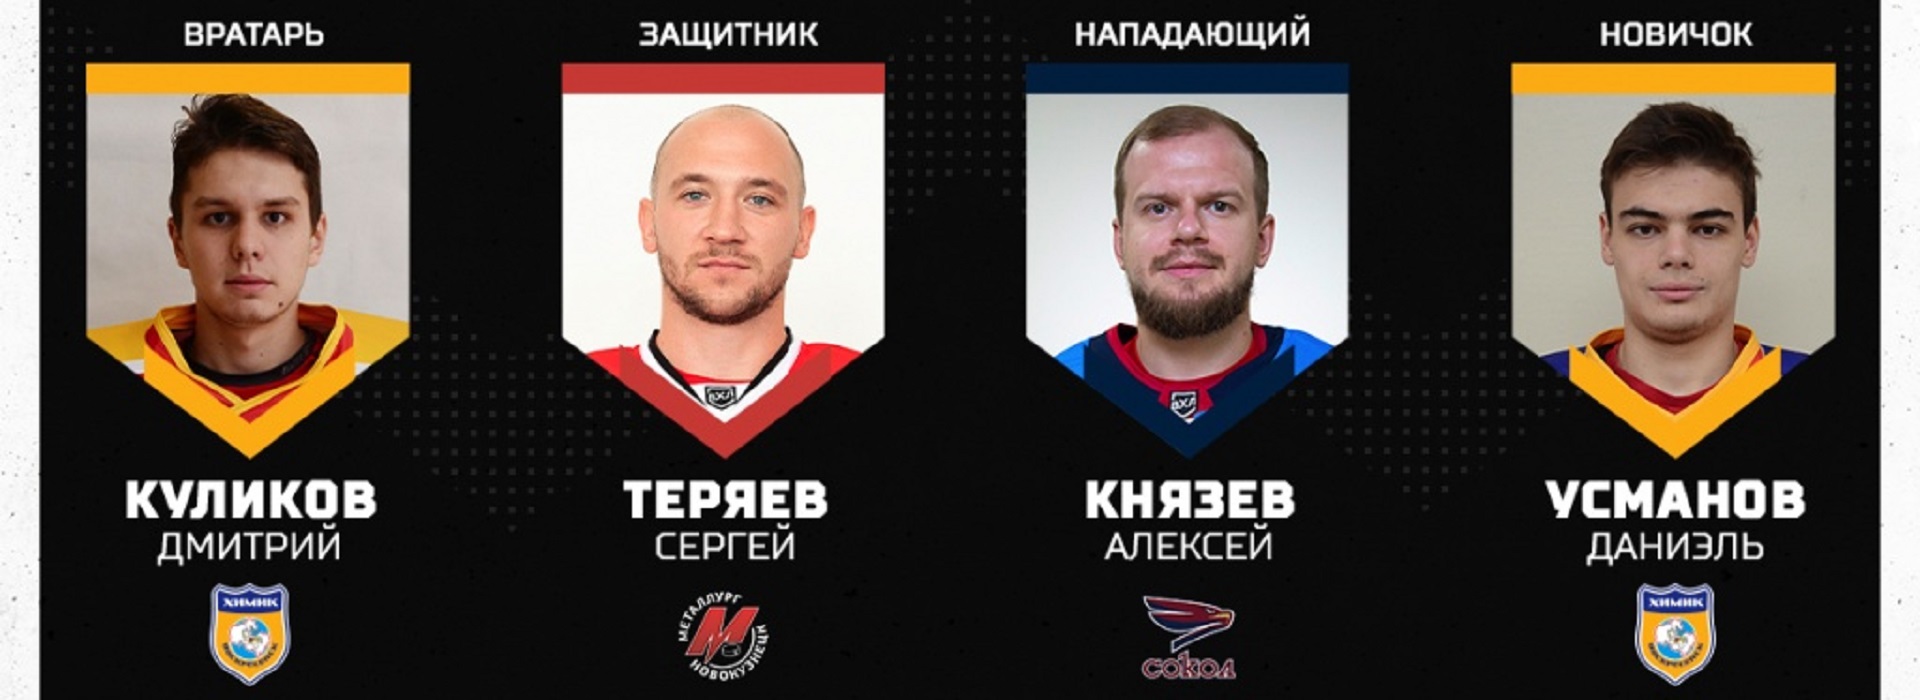 Куликов и Усманов среди лучших игроков второго раунда Кубка Петрова!